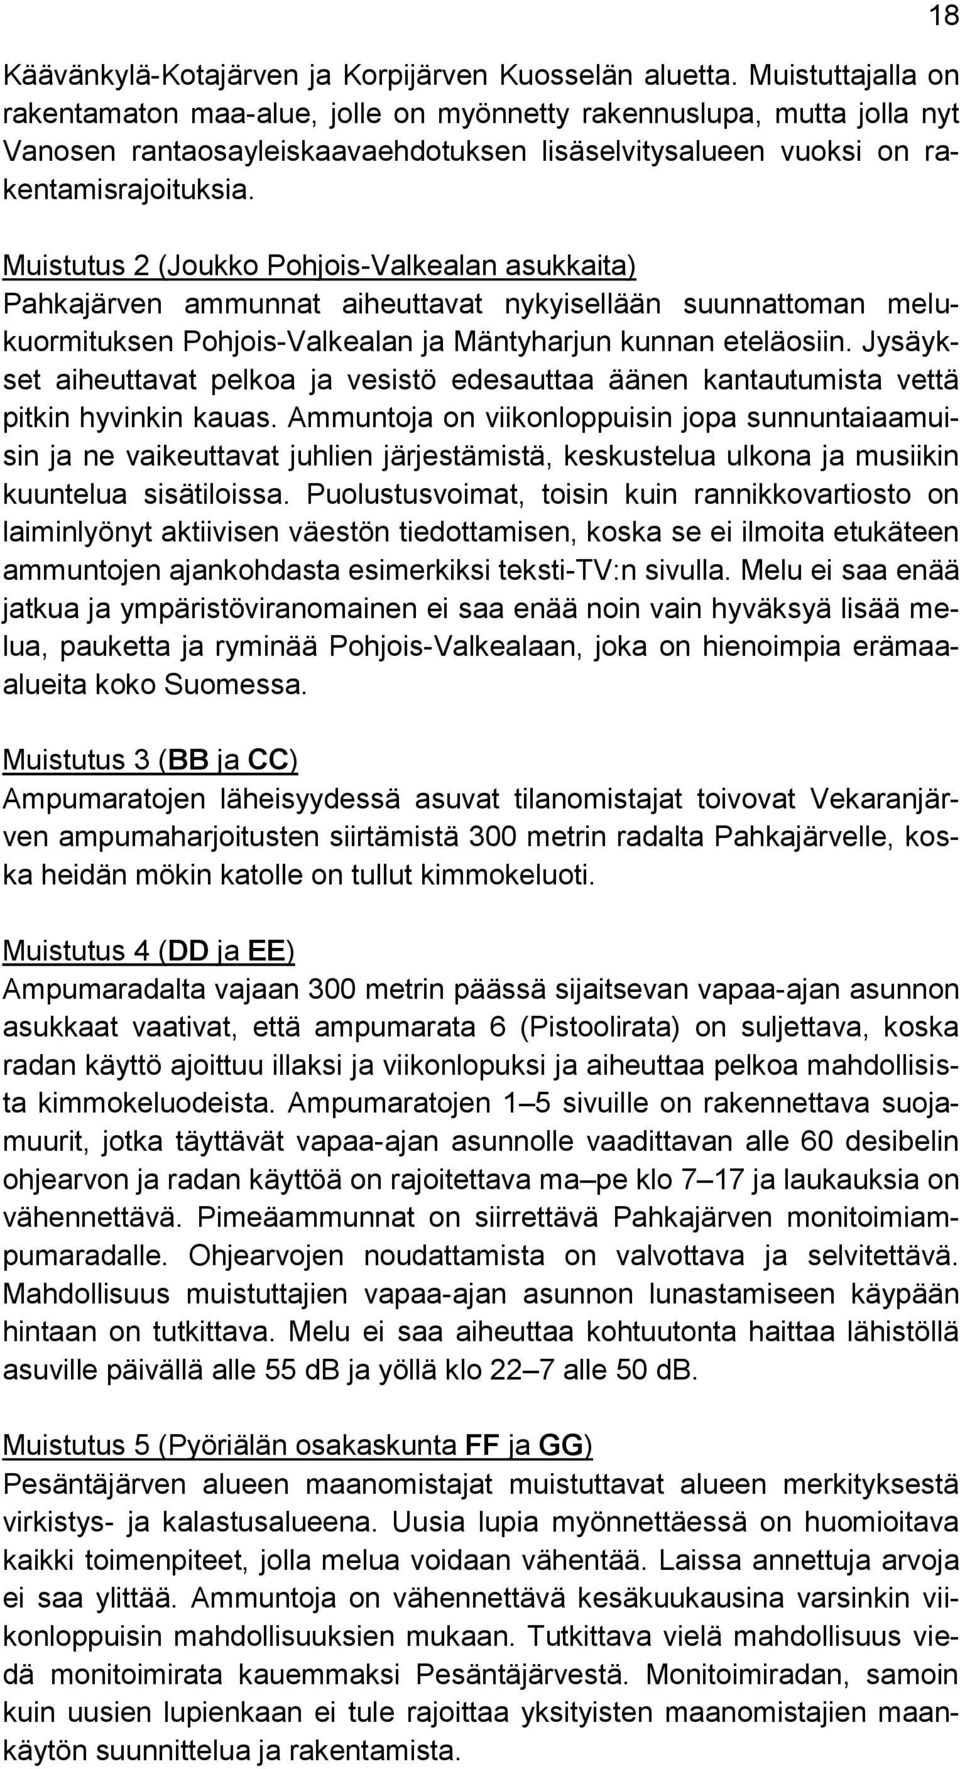 Muistutus 2 (Joukko Pohjois-Valkealan asukkaita) Pahkajärven ammunnat aiheuttavat nykyisellään suunnattoman melukuormituksen Pohjois-Valkealan ja Mäntyharjun kunnan eteläosiin.